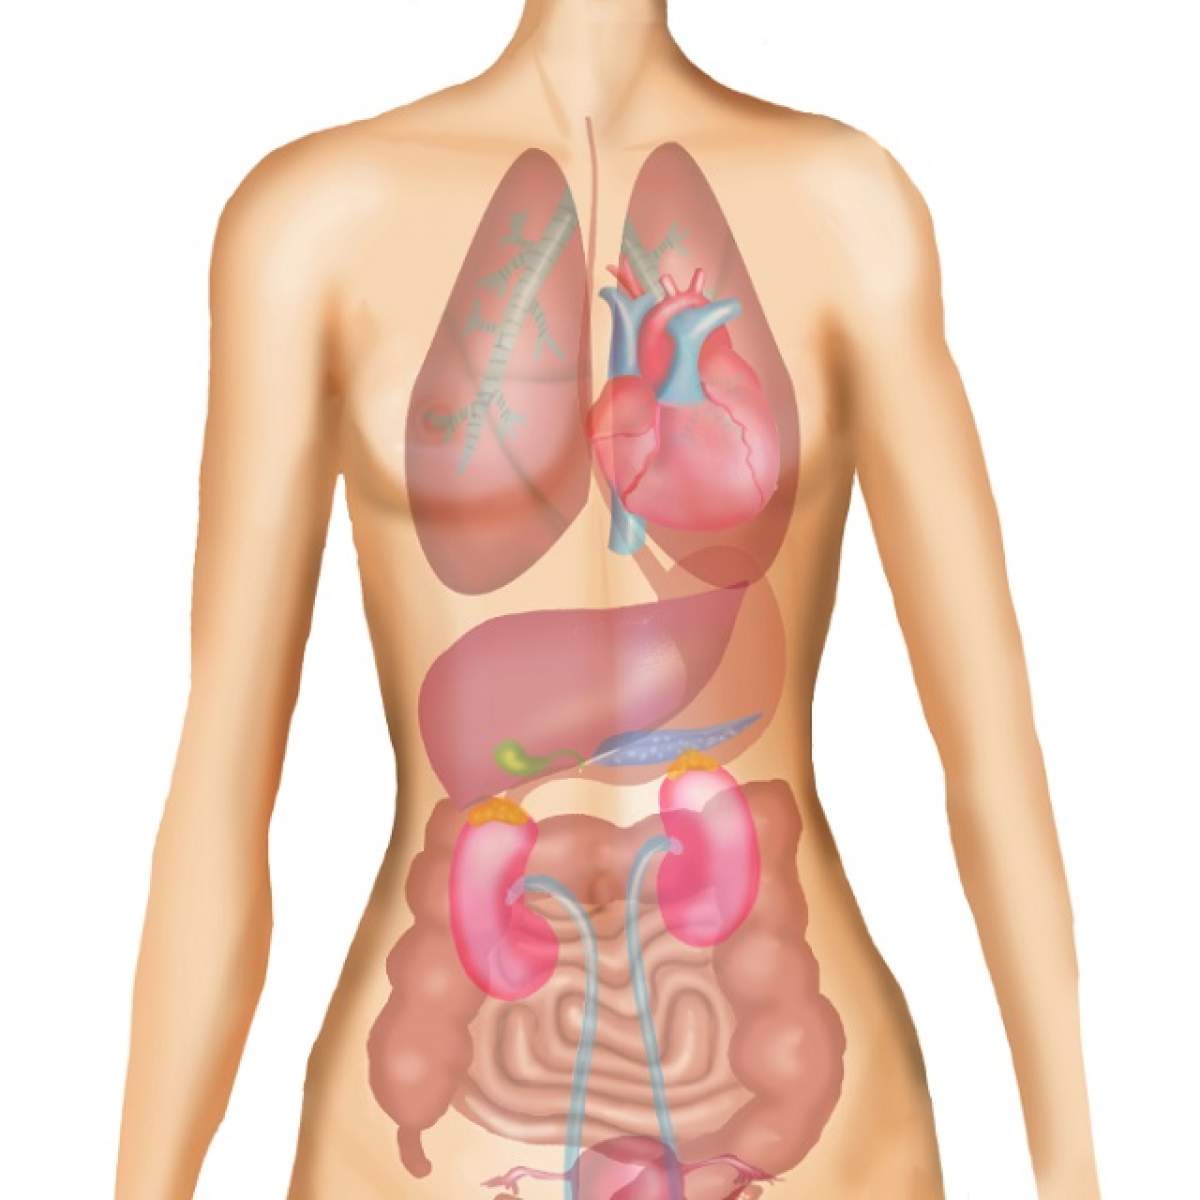 A fost descoperit un nou organ în corpul uman! Se găseşte în sistemul digestiv